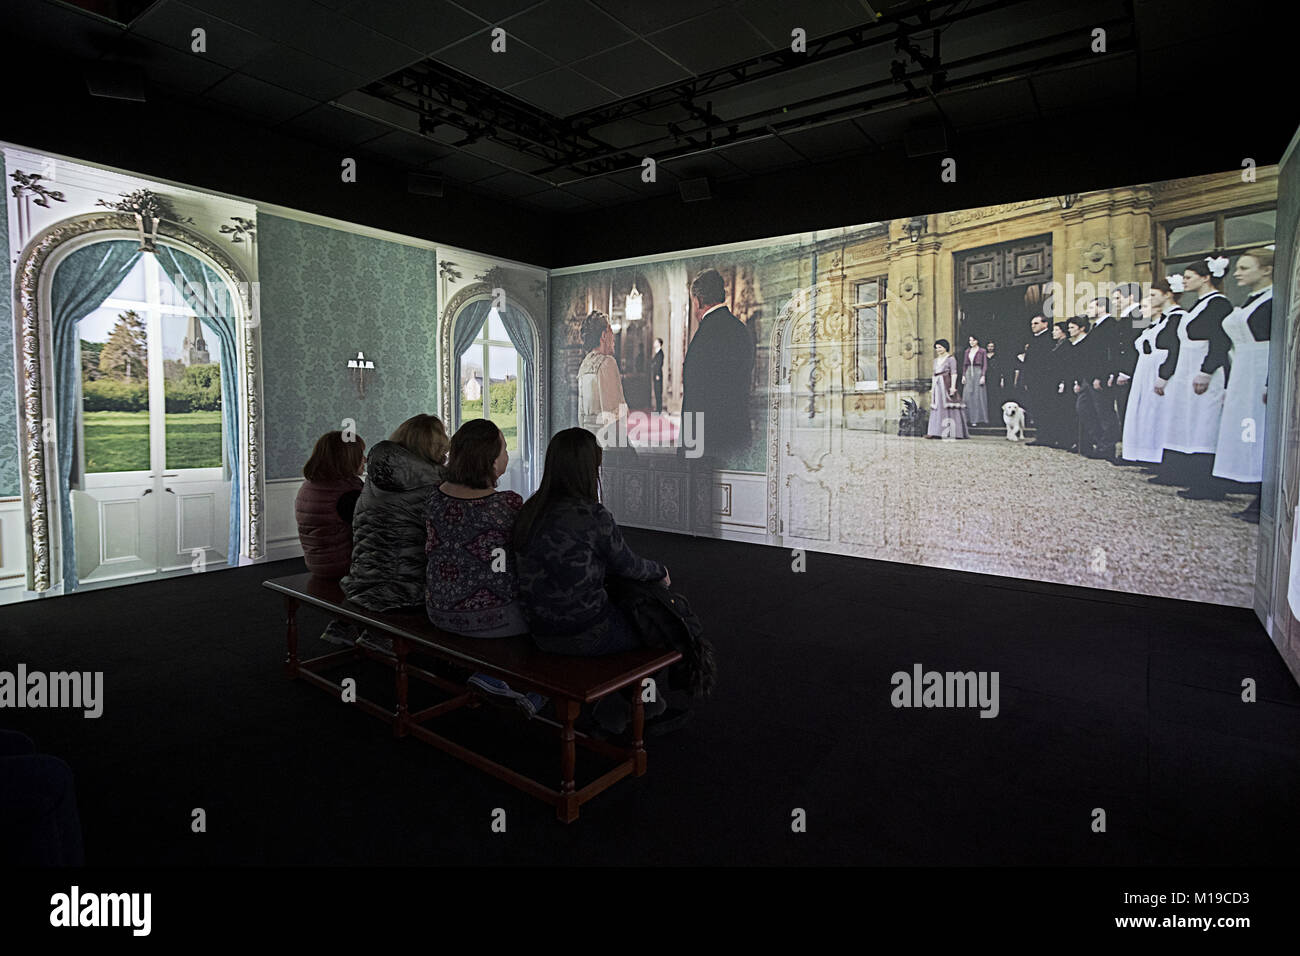 Un degré 270 video show illustrant la classe supérieure à Downton Abbey l'exposition sur West 57th Street à Manhattan, New York City. Banque D'Images